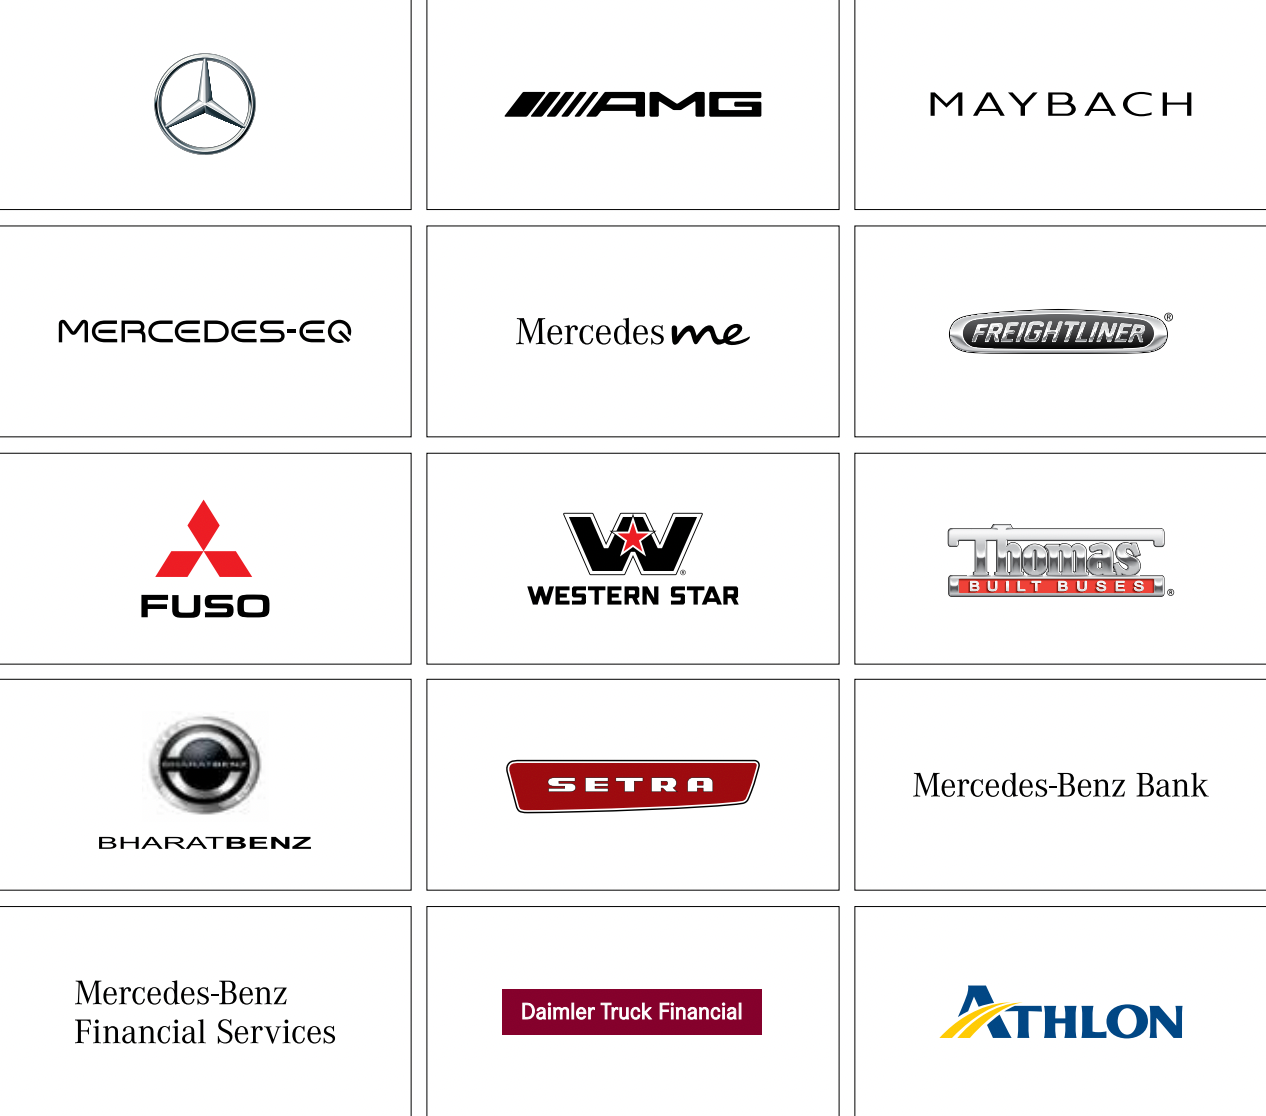 Логотипы брендов компании. Источник: годовой отчет компании, стр. 4